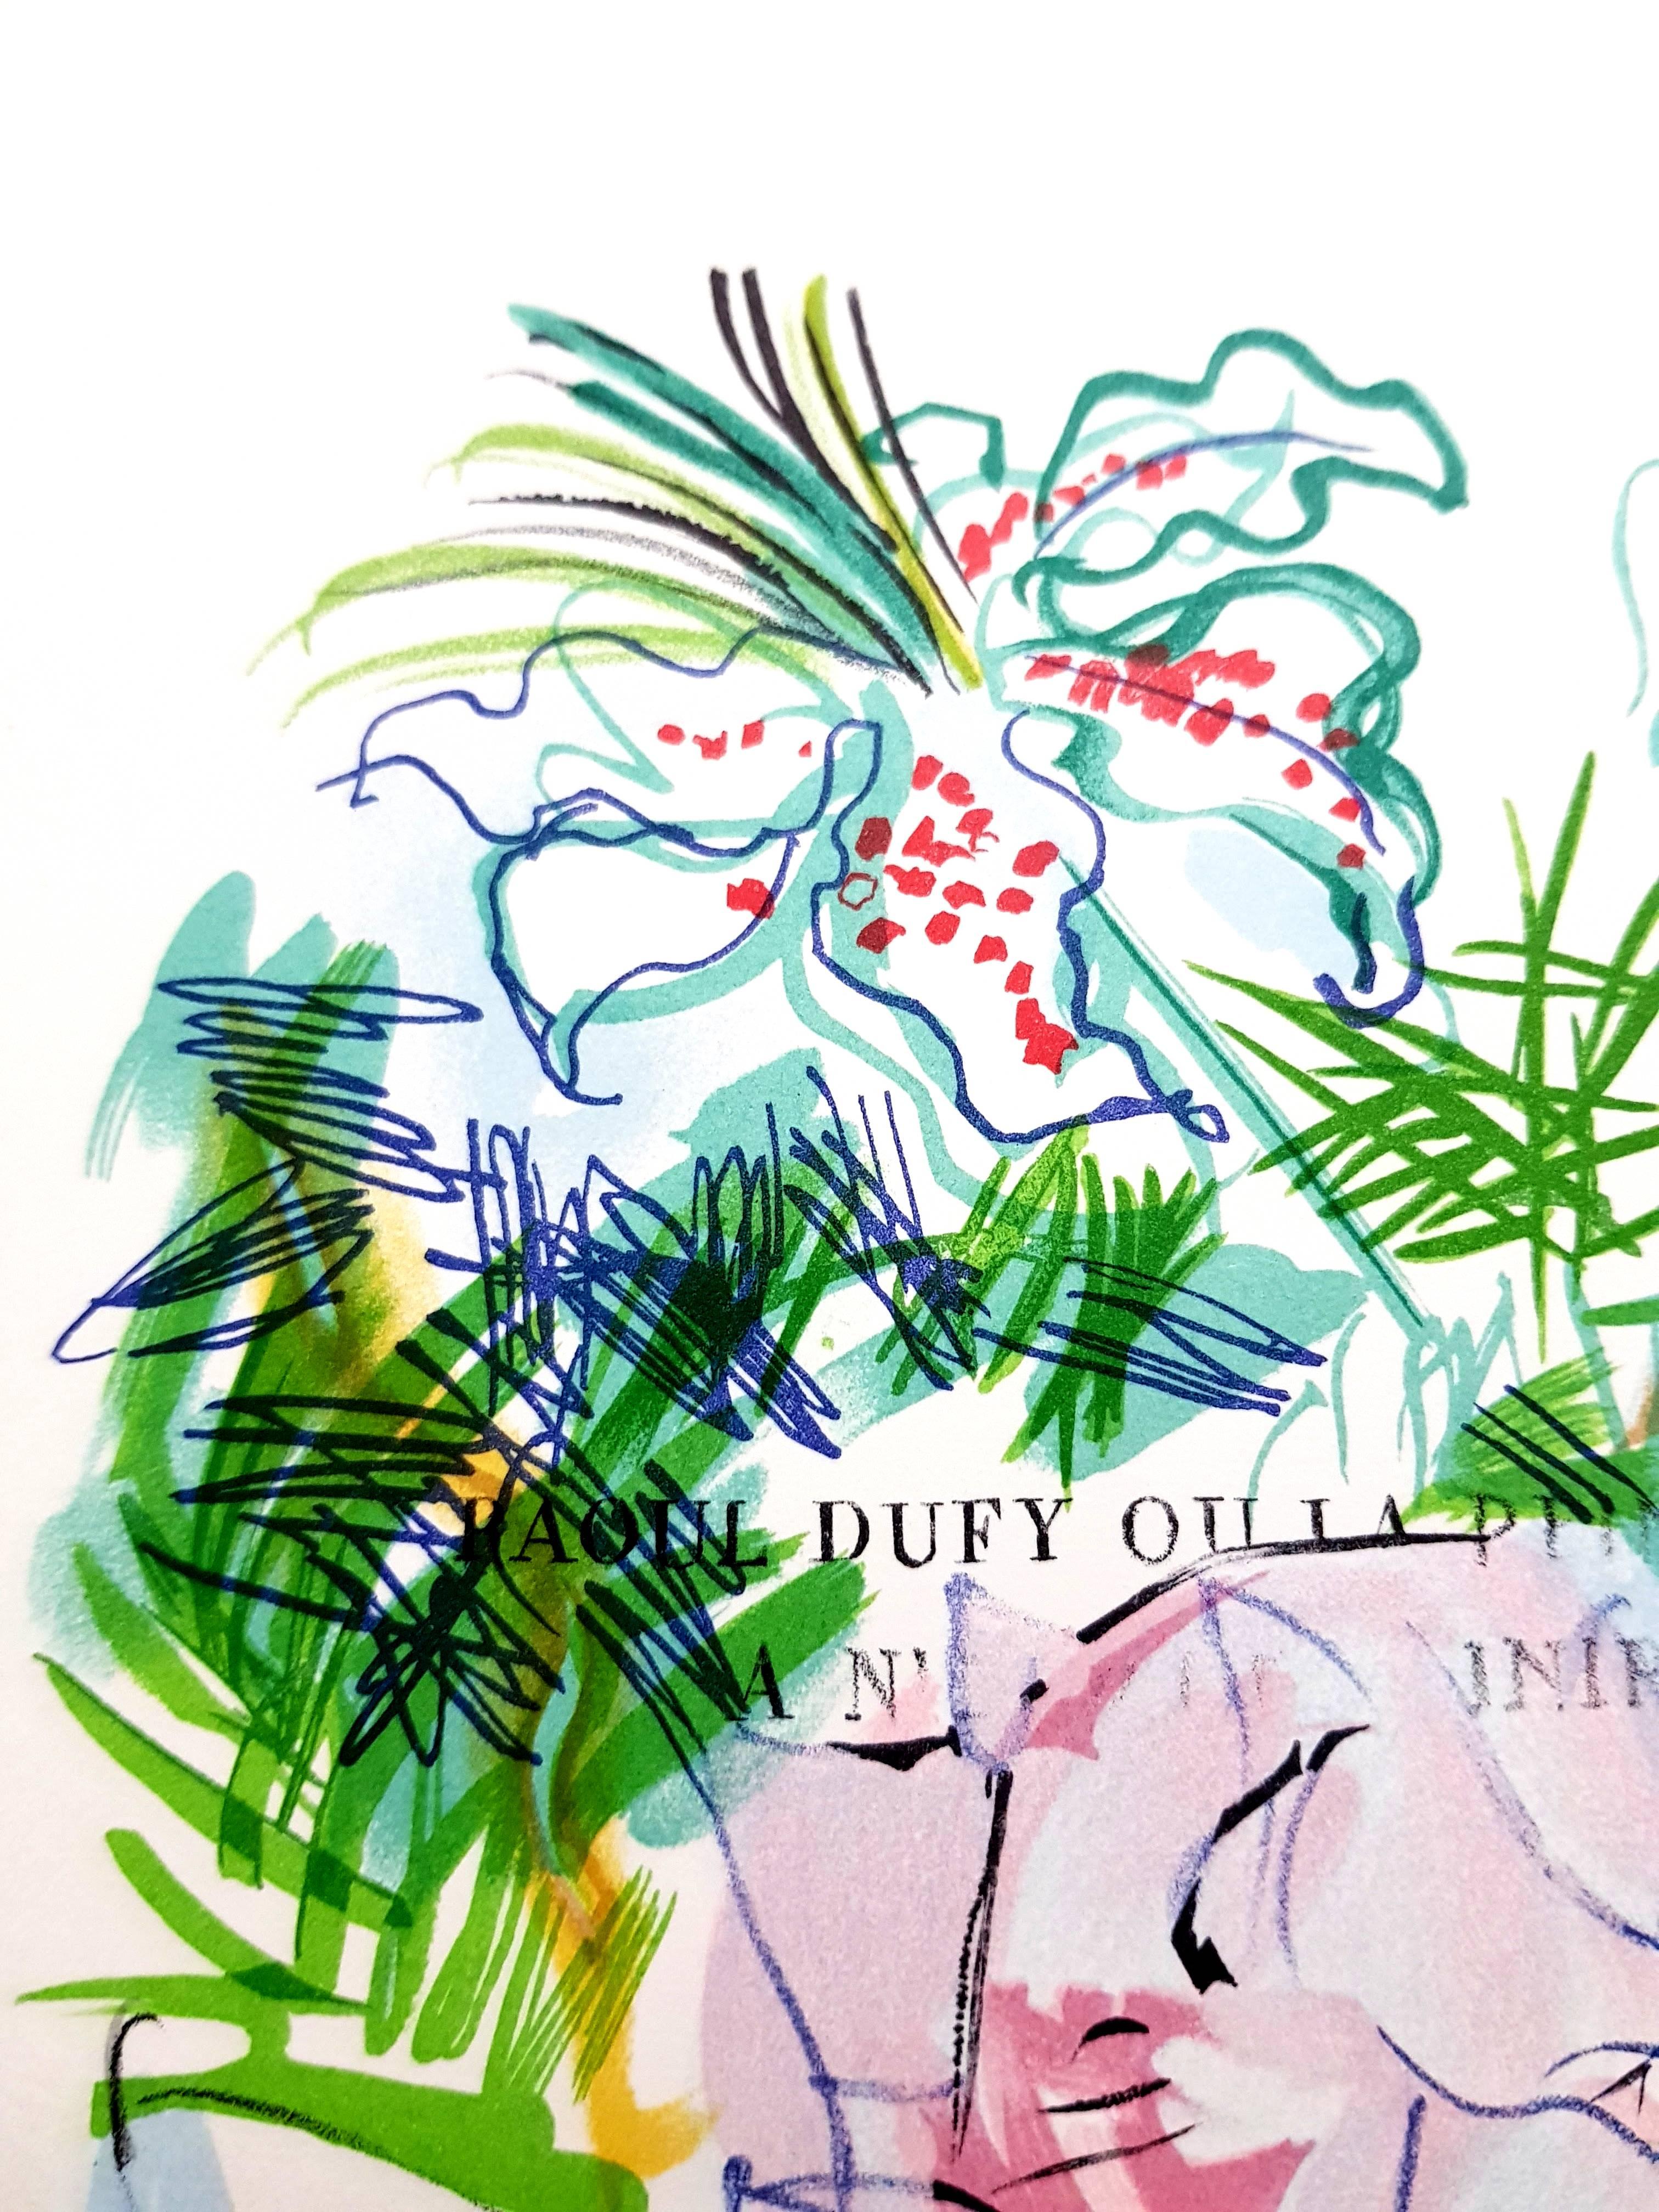 (nach) Raoul Dufy 
Lithographie nach einem Aquarell, veröffentlicht in dem Buch 